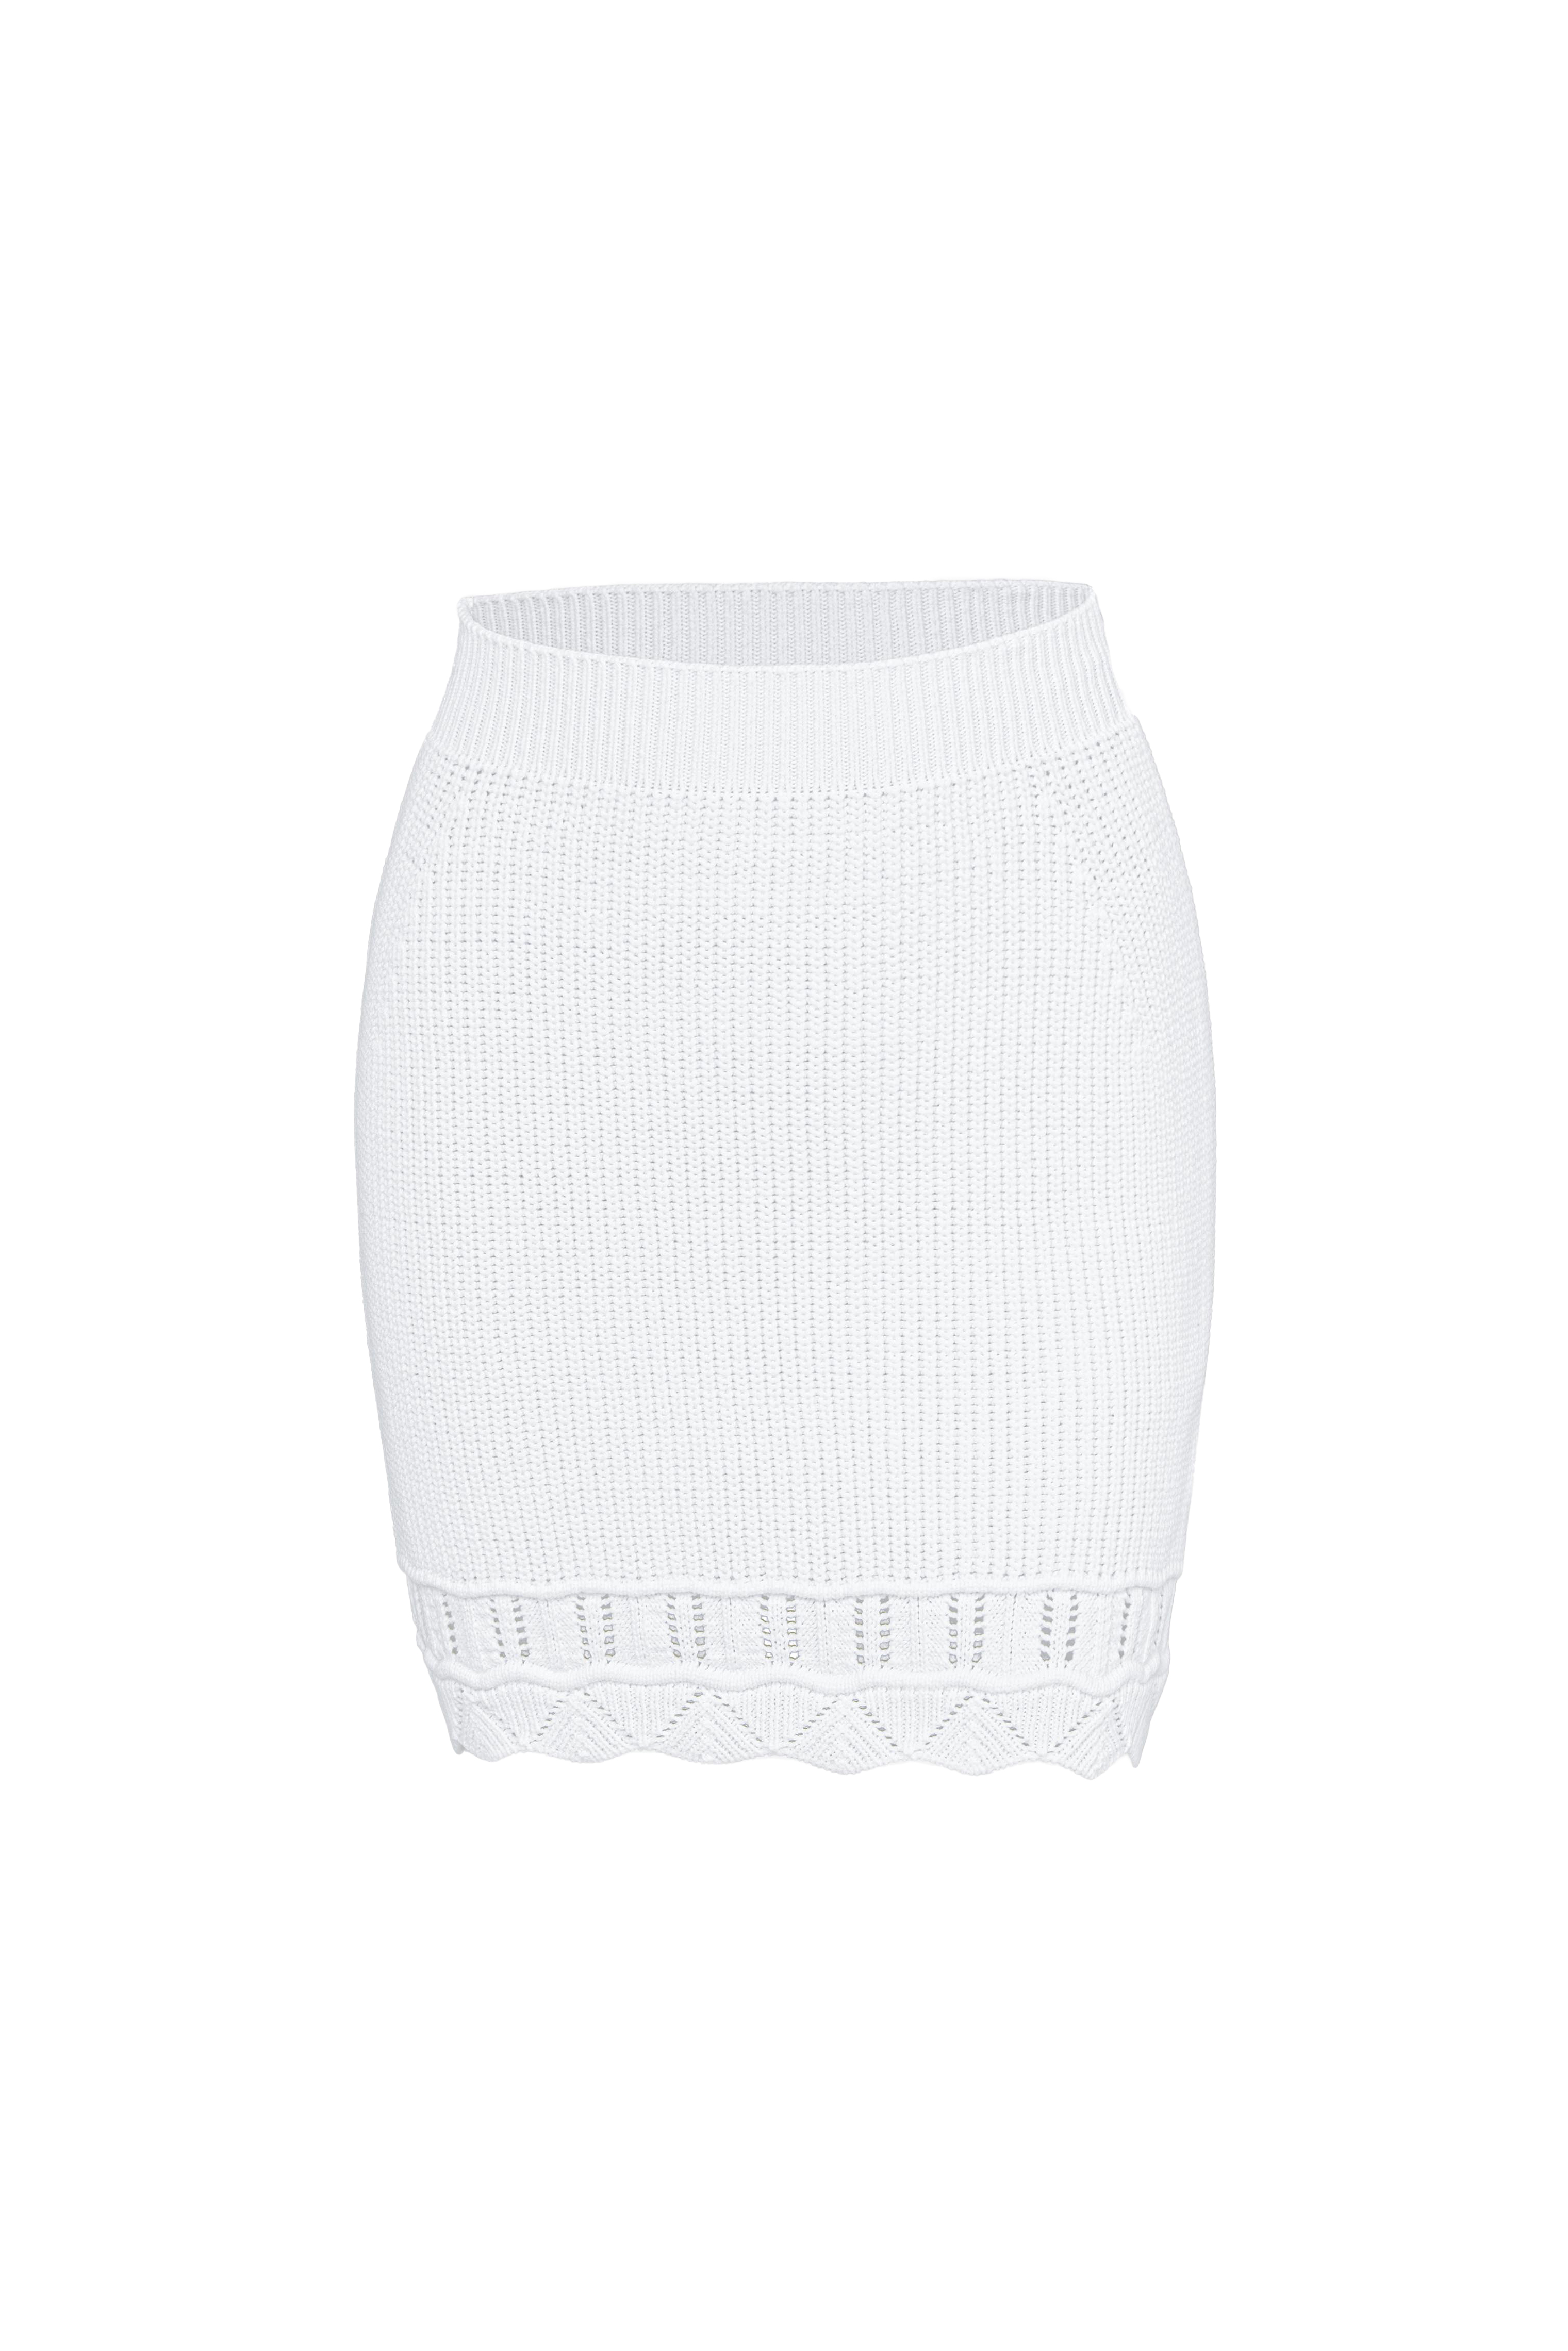 Skirt 4488-02 White from BRUSNiKA